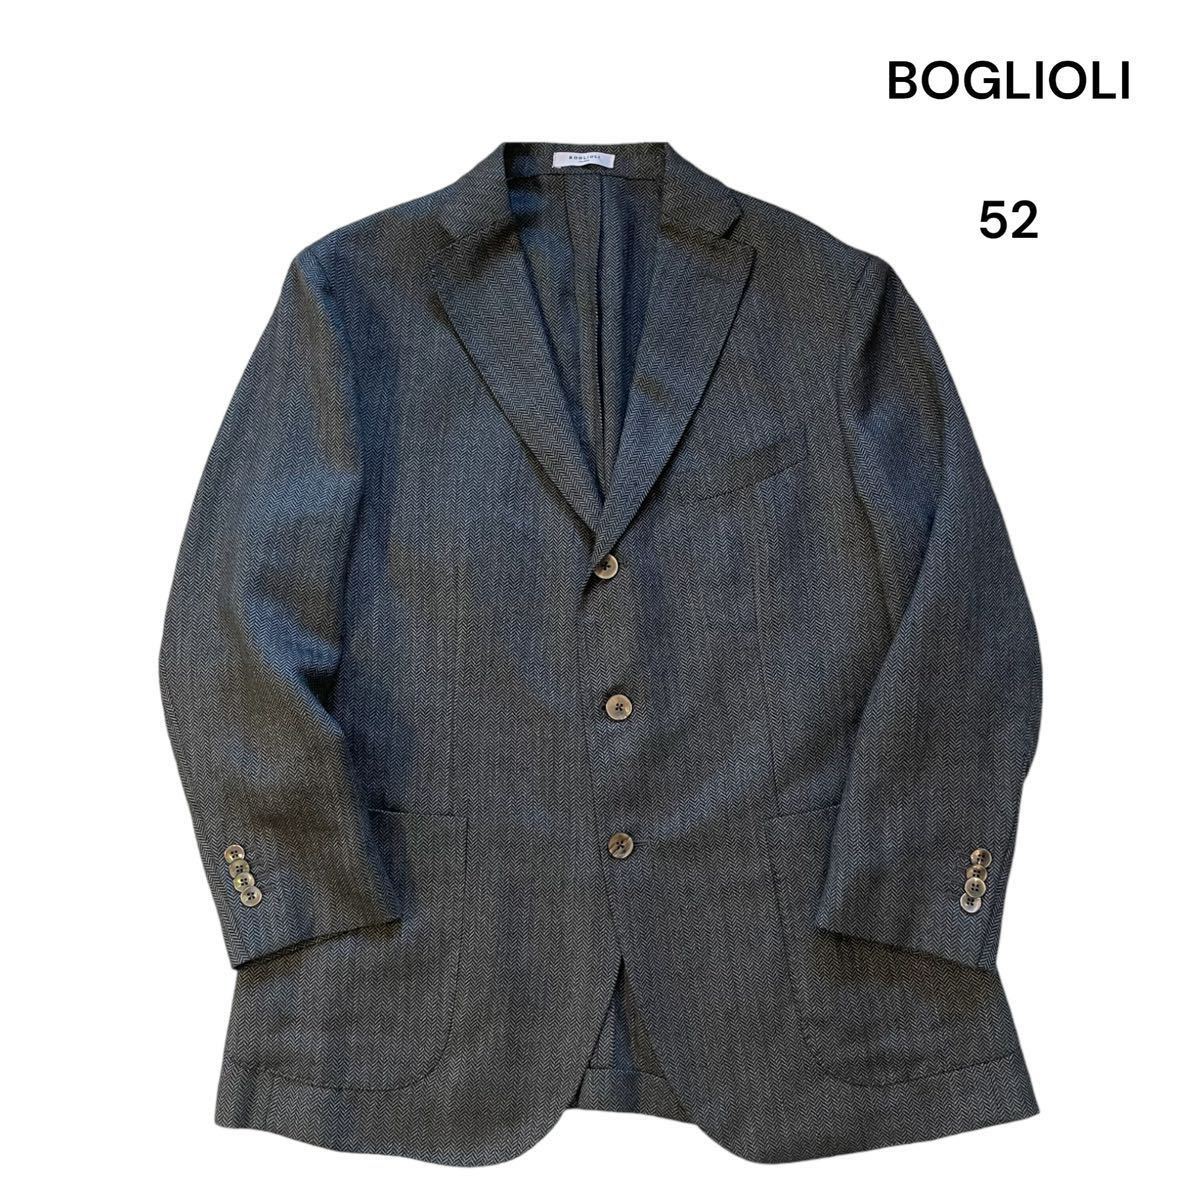 【美品】BOGLIOLI ボリオリ テーラードジャケット グレー 3ボタン 開き見せヘリンボーン グレー 52 イタリア製 Made in Italy 大きいサイズ